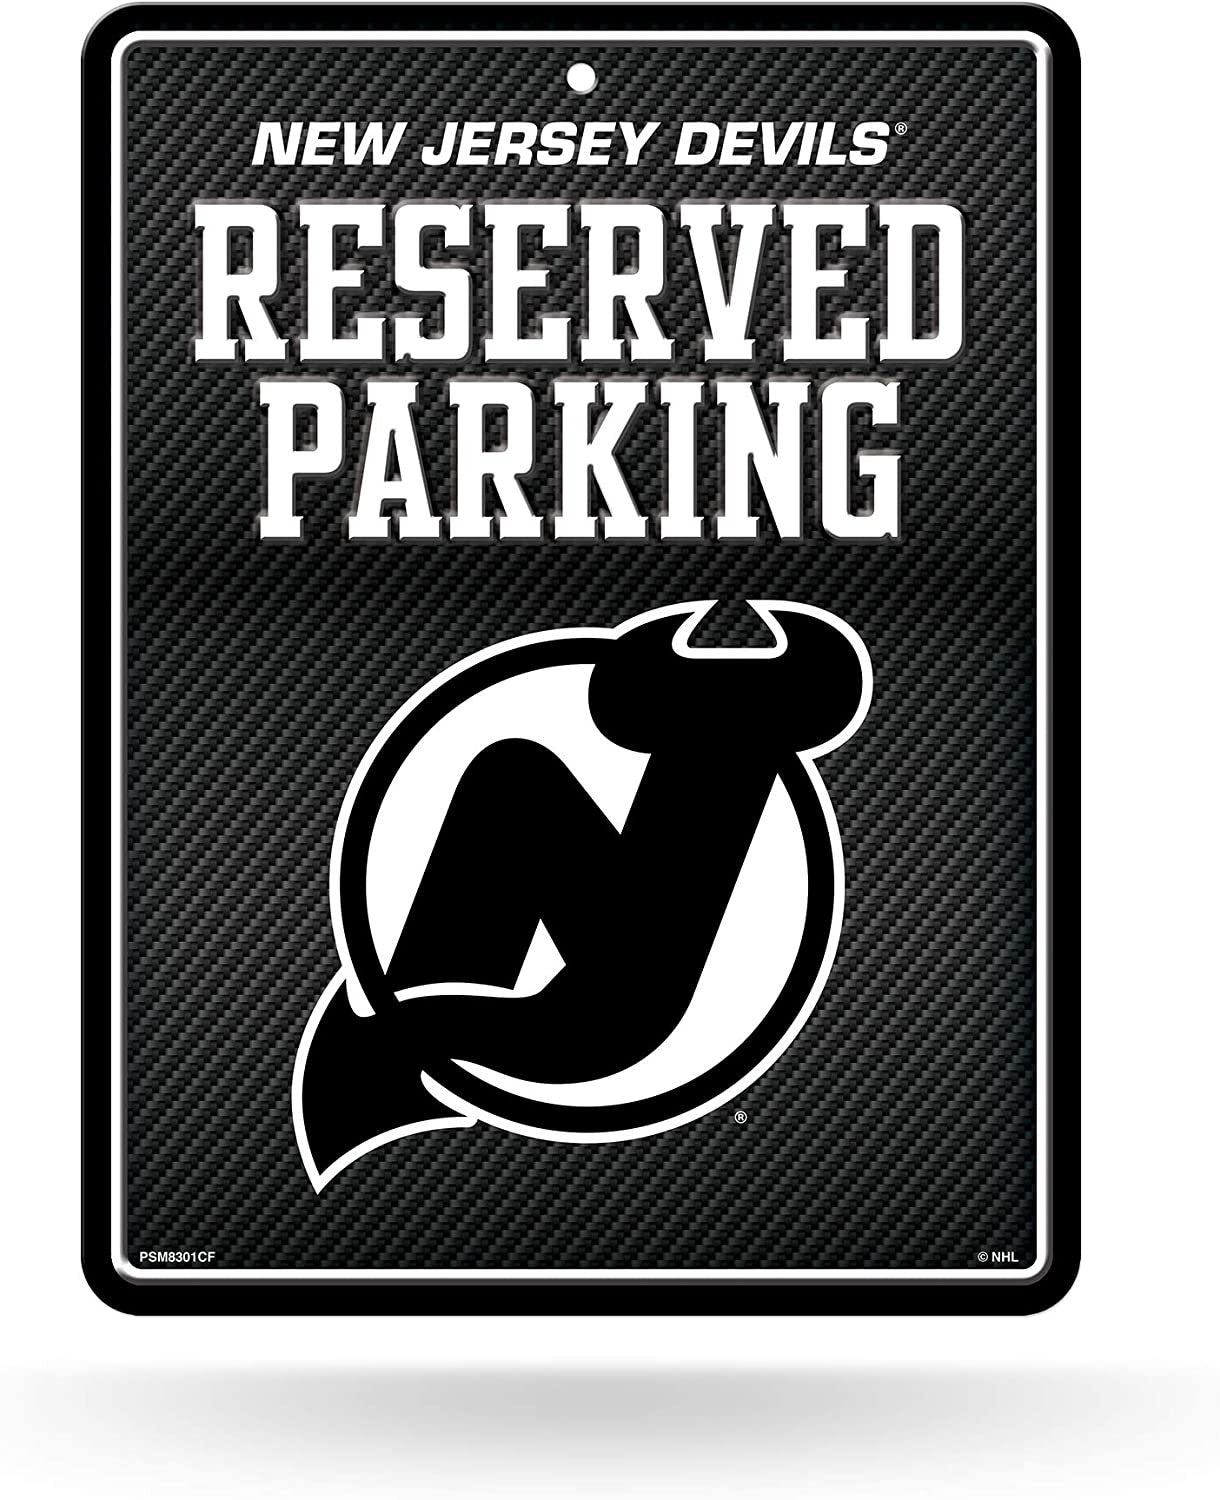 New Jersey Devils Metal Parking Sign, Carbon Fiber Design 8.5x11 Inch